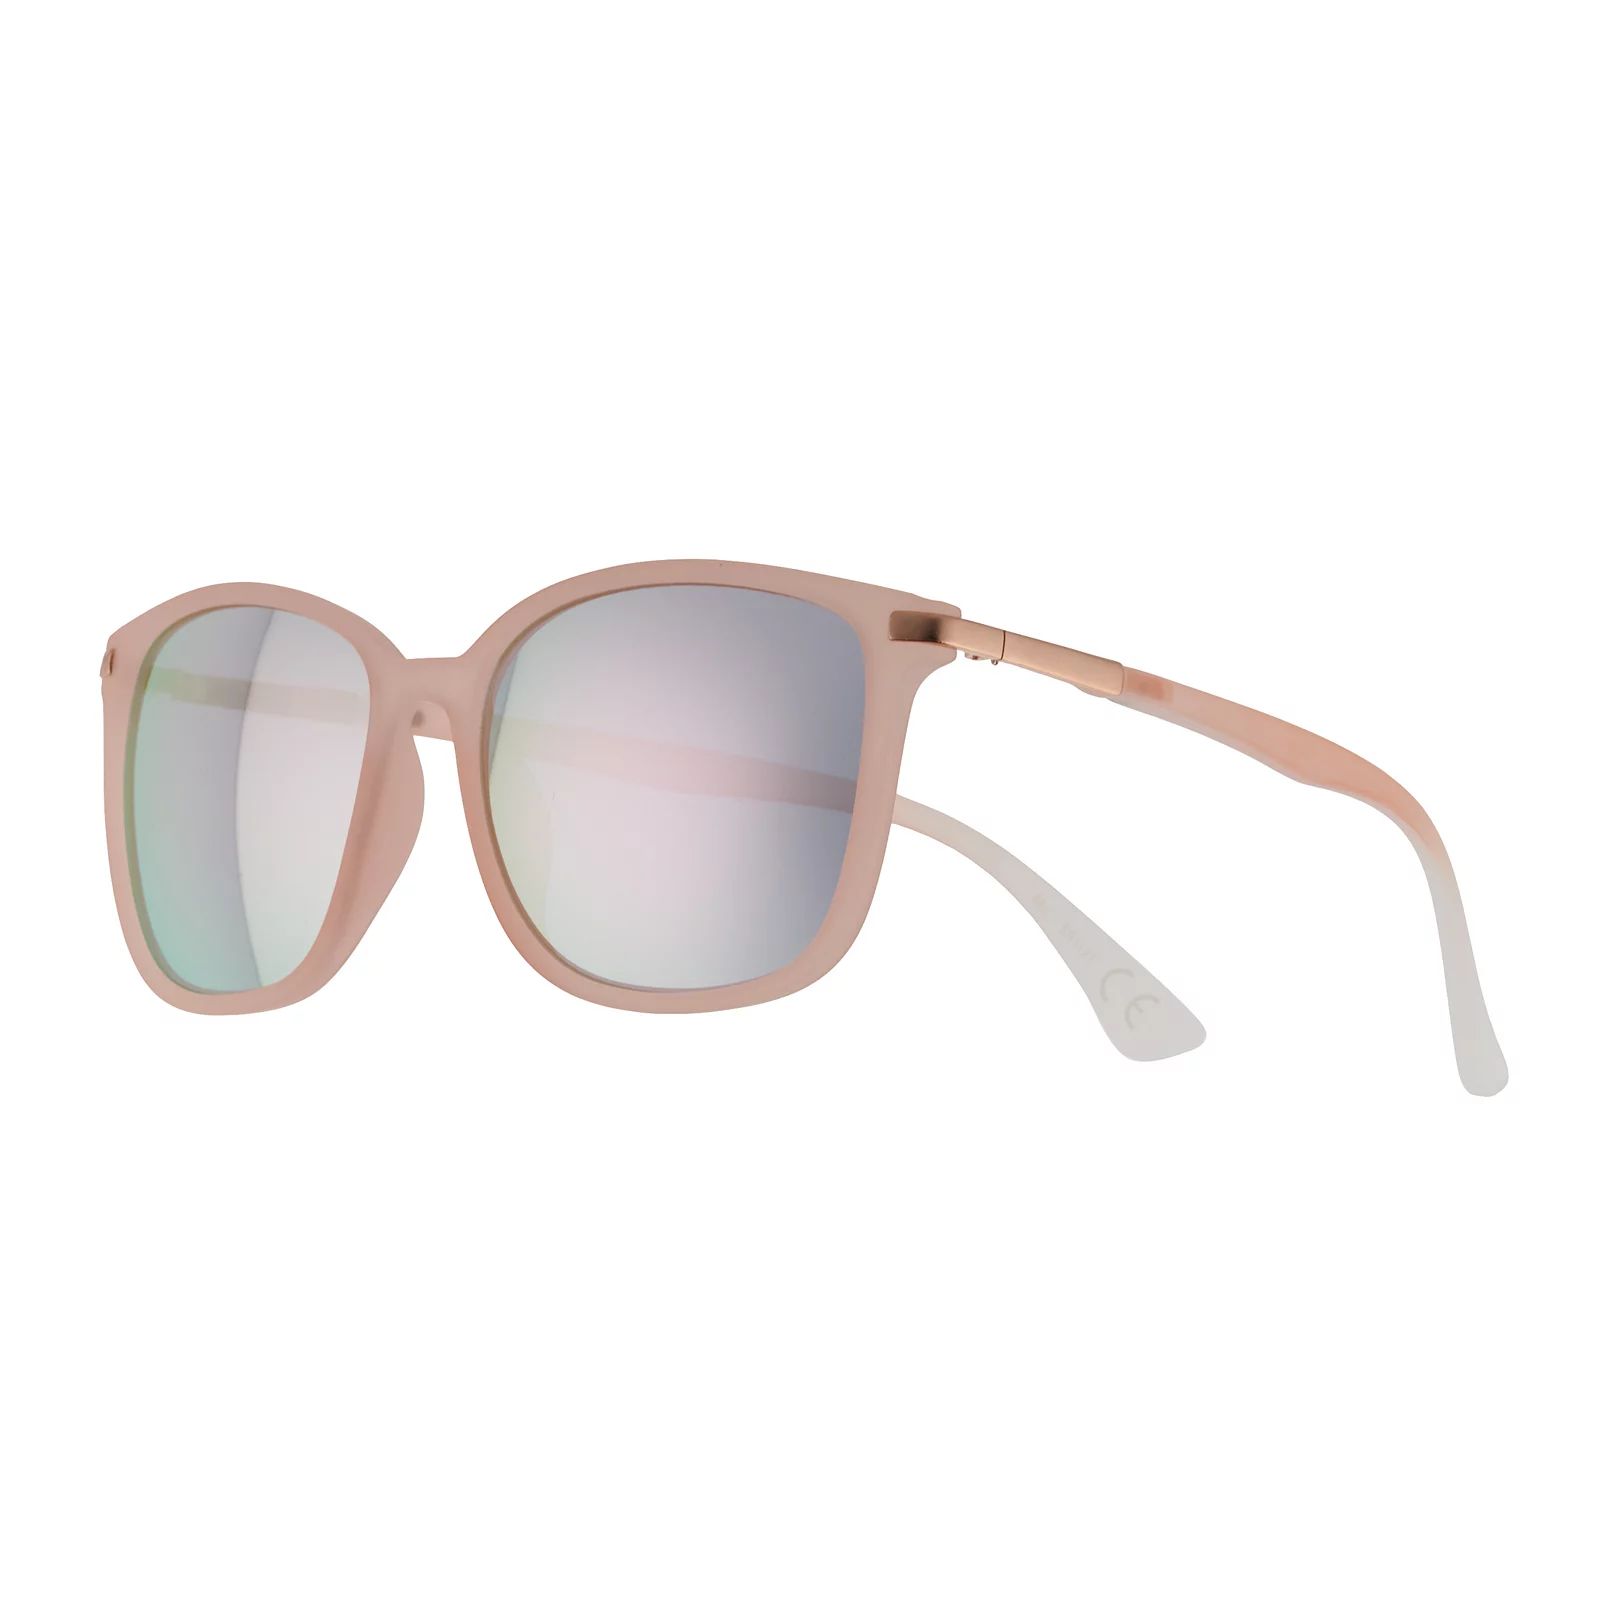 Women's Tek Gear 56mm Modern Square Frame Mirrored Sunglasses, Pink | Kohl's